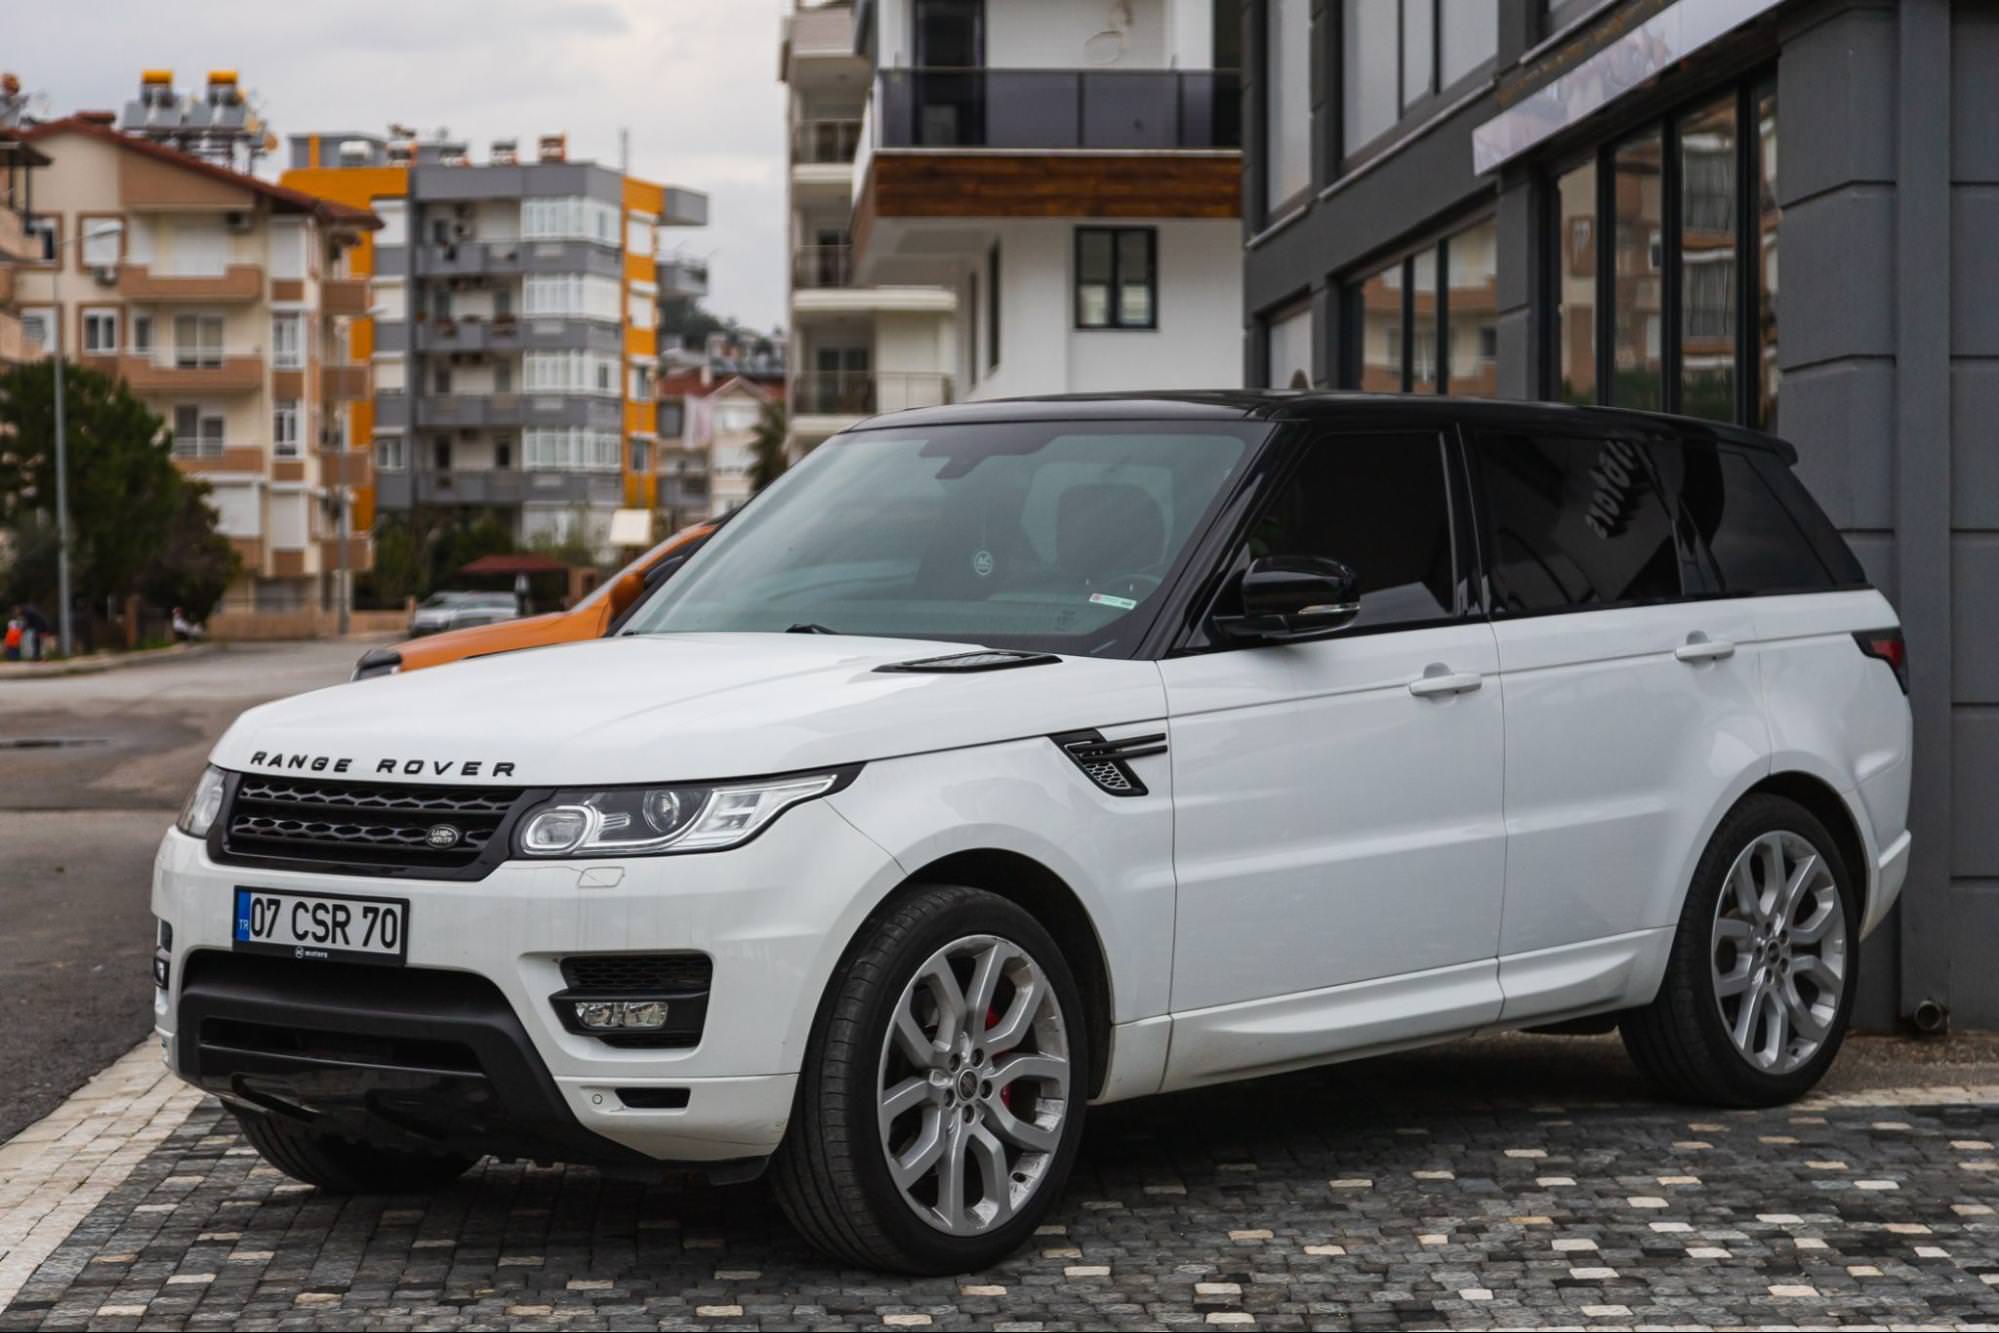 Белый Land Rover Range Rover припаркован